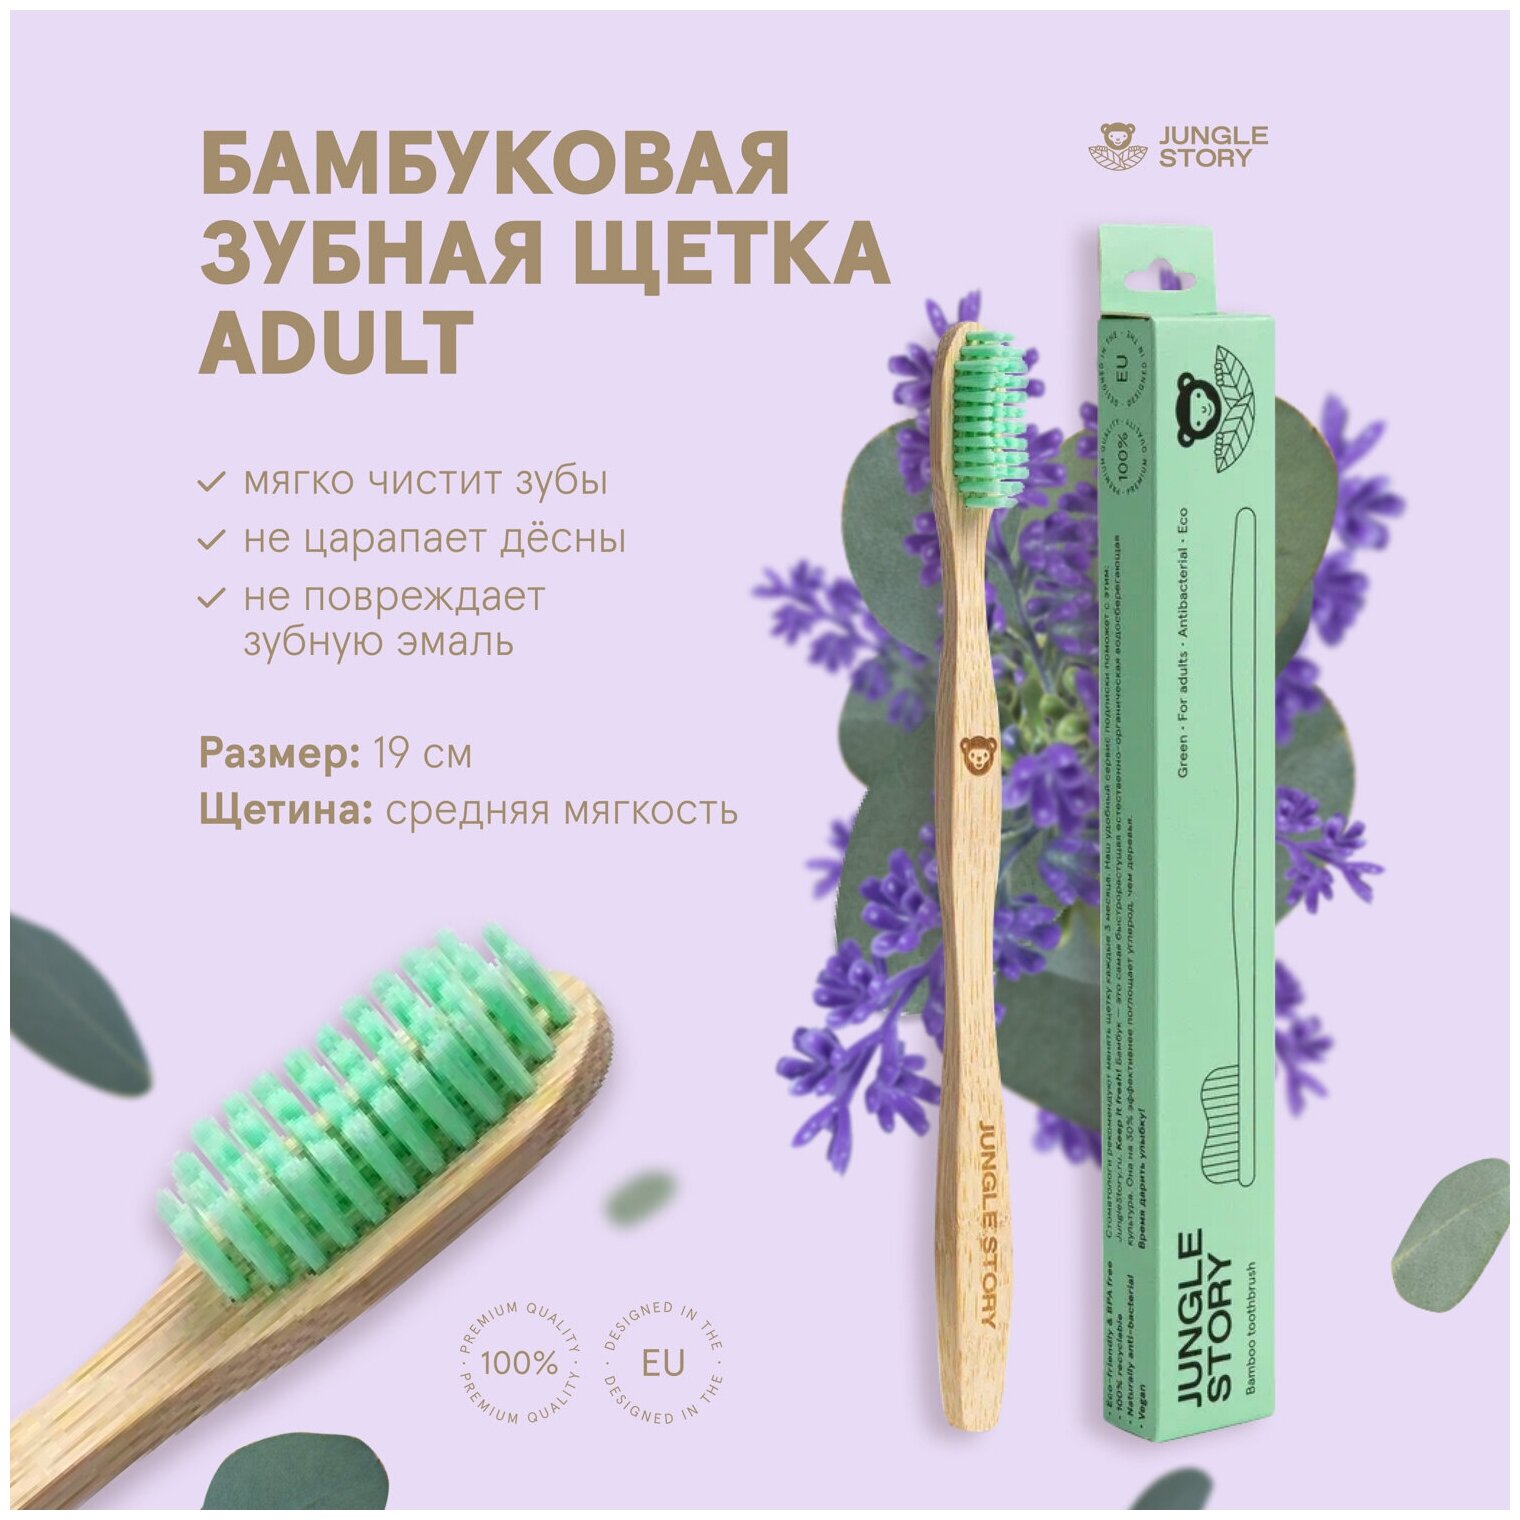 Бамбуковая зубная щётка с щетиной средней жесткости Зеленая